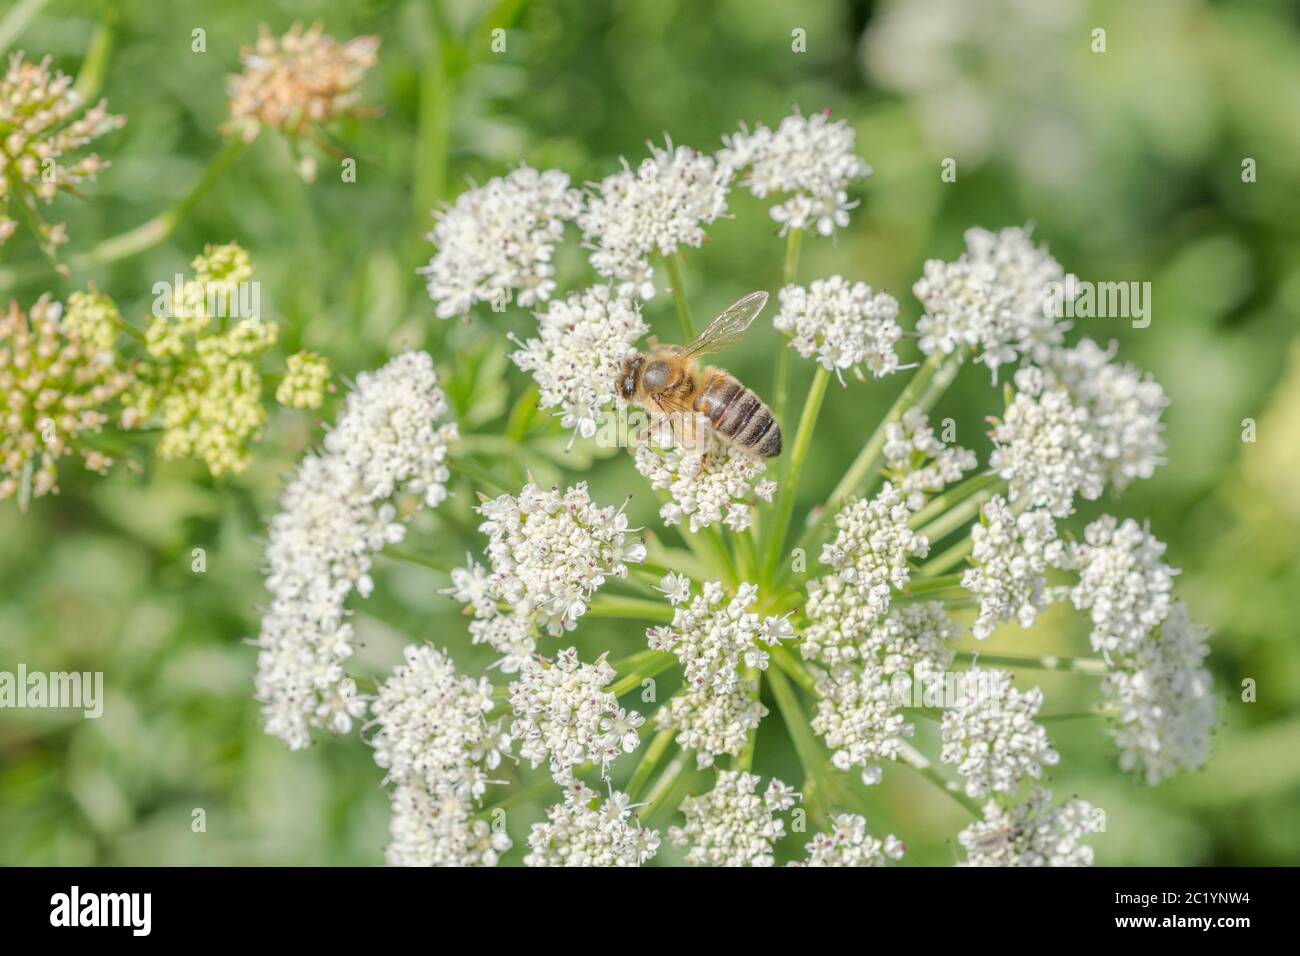 Lavoratore Honeybee / Apis mellifera foraggio e la raccolta di polline tra i fiori di acqua Dropwort / Oenantthe croccata in estate sole. Insetti UK. Foto Stock